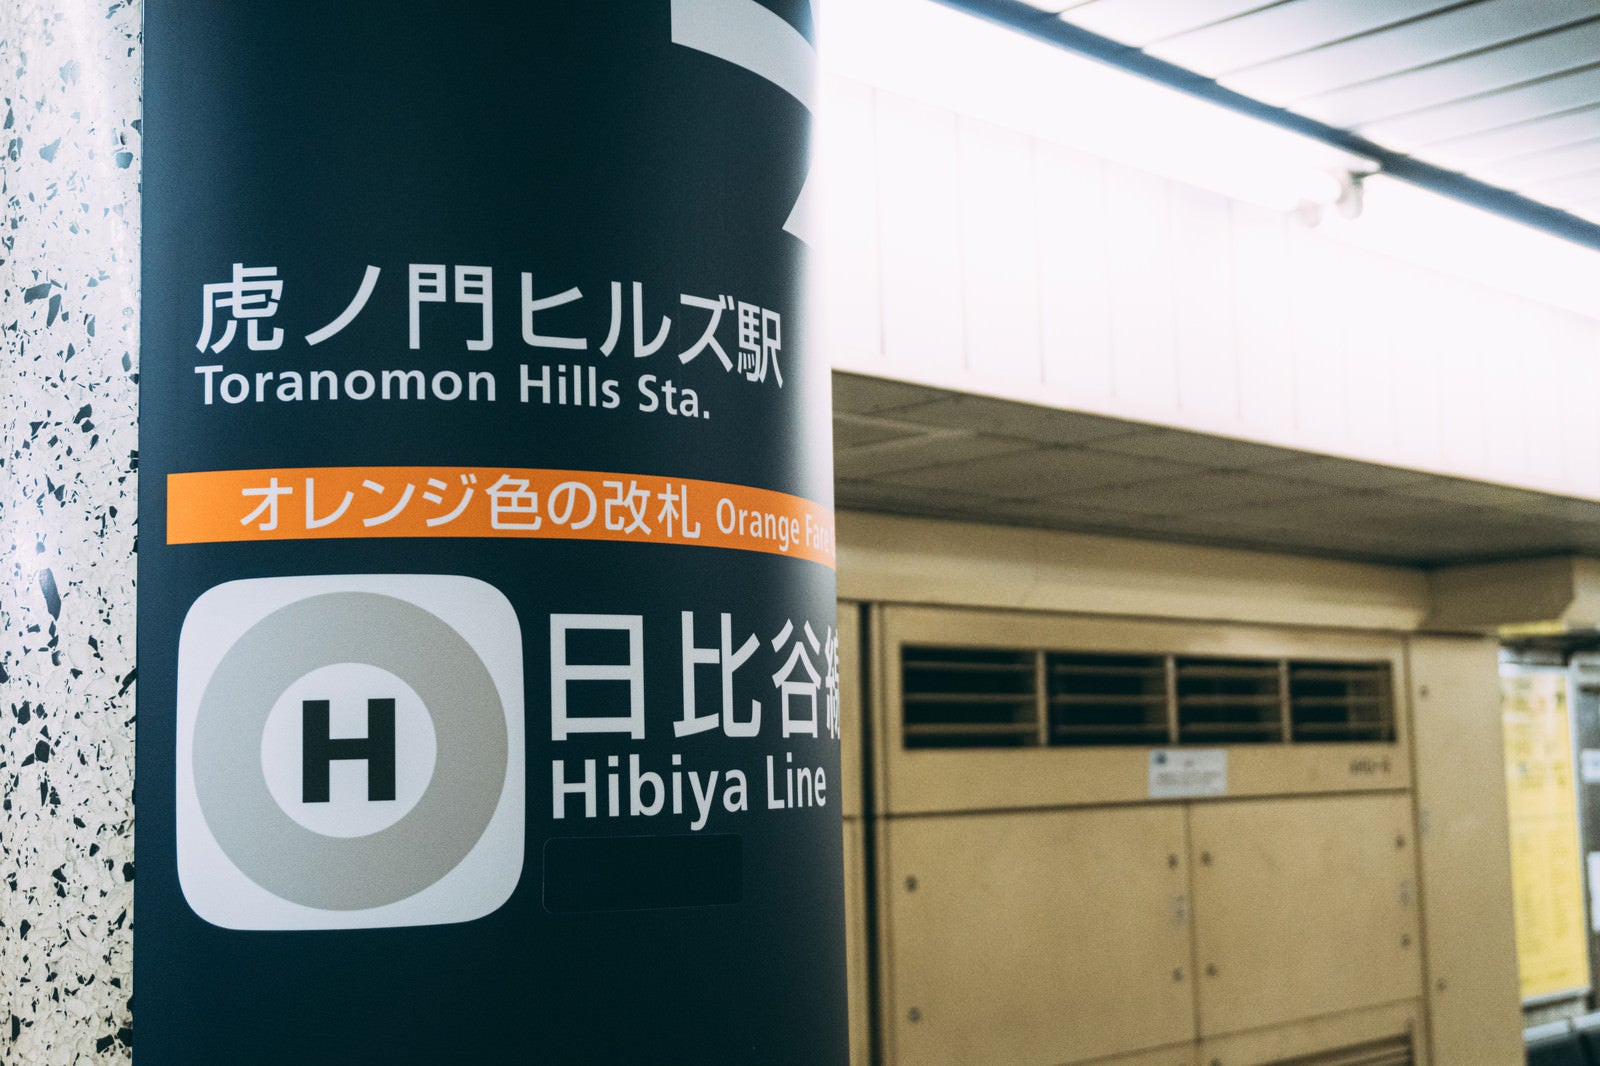 「日比谷線虎ノ門ヒルズ駅のホームにある柱」の写真